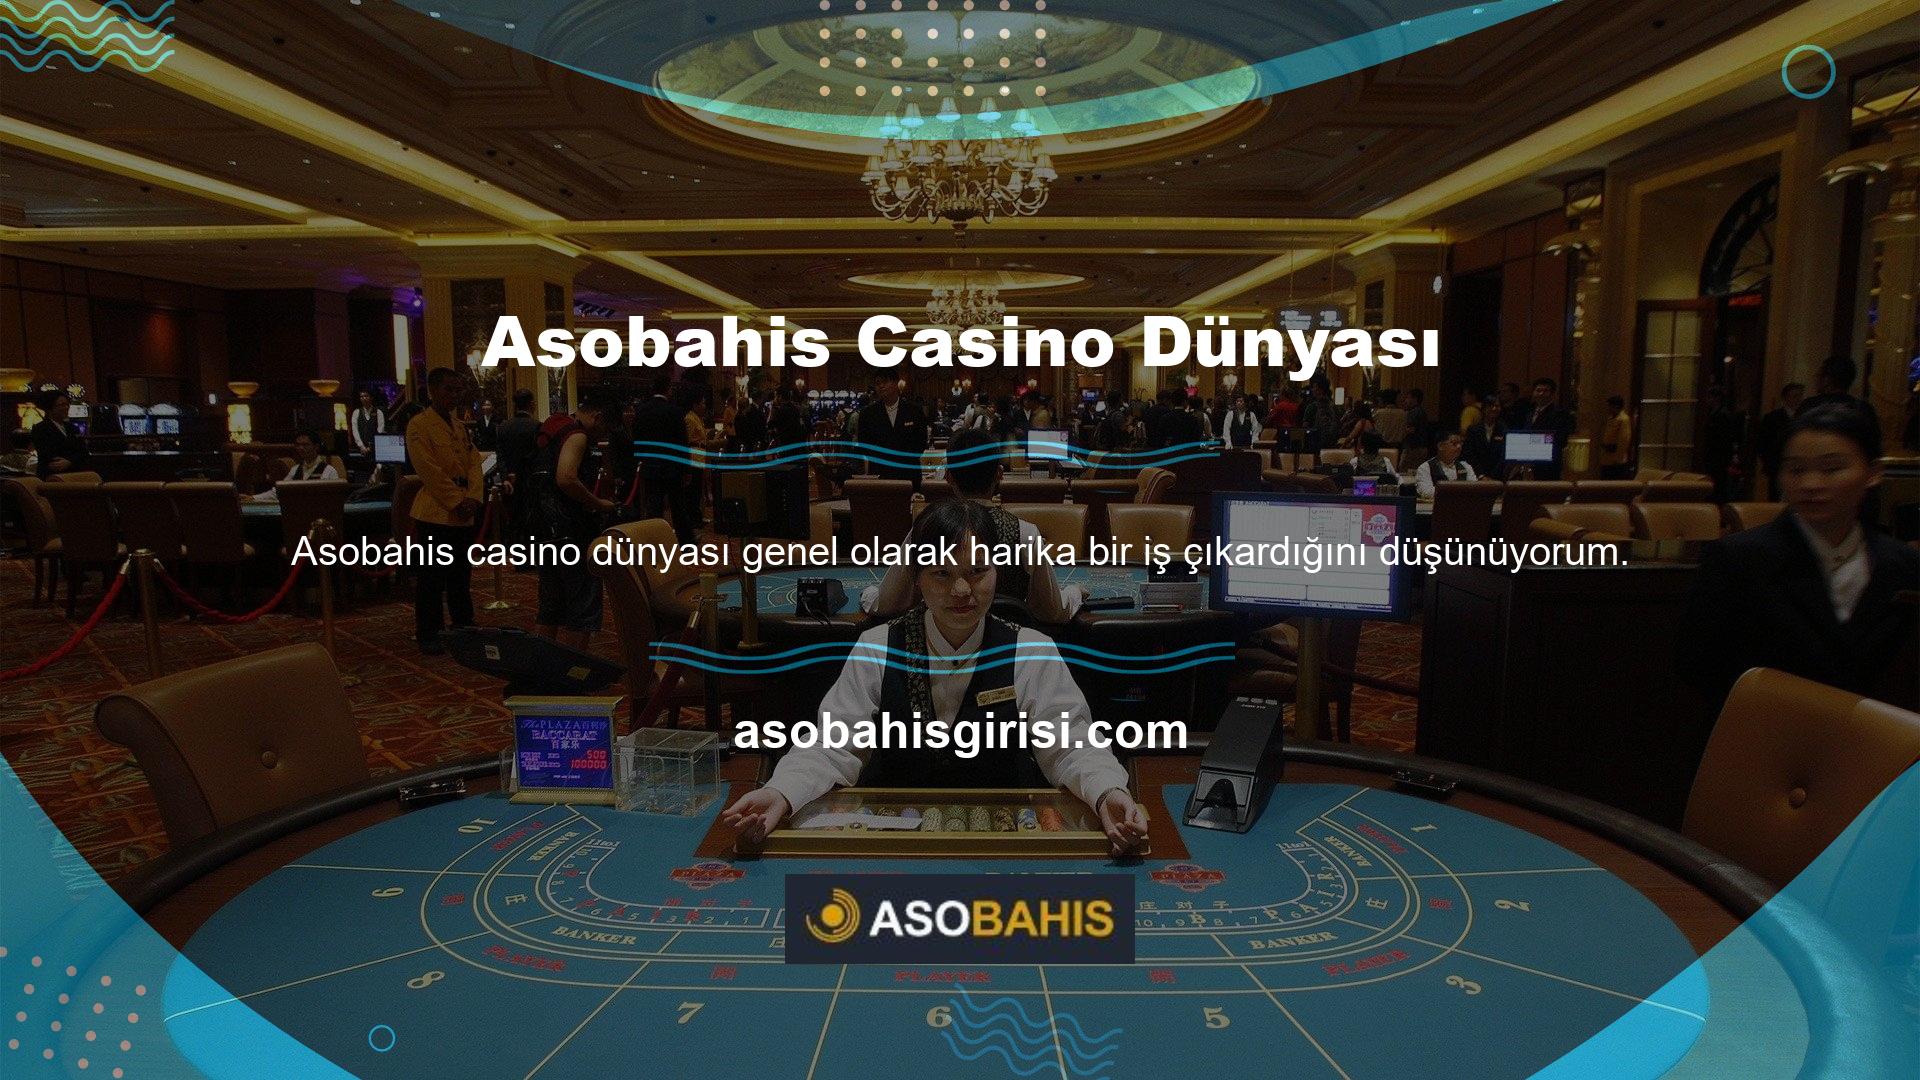 Asobahis eleştirileri casino dünyasındaki tüm kullanıcılar için yeterli olmayabilir